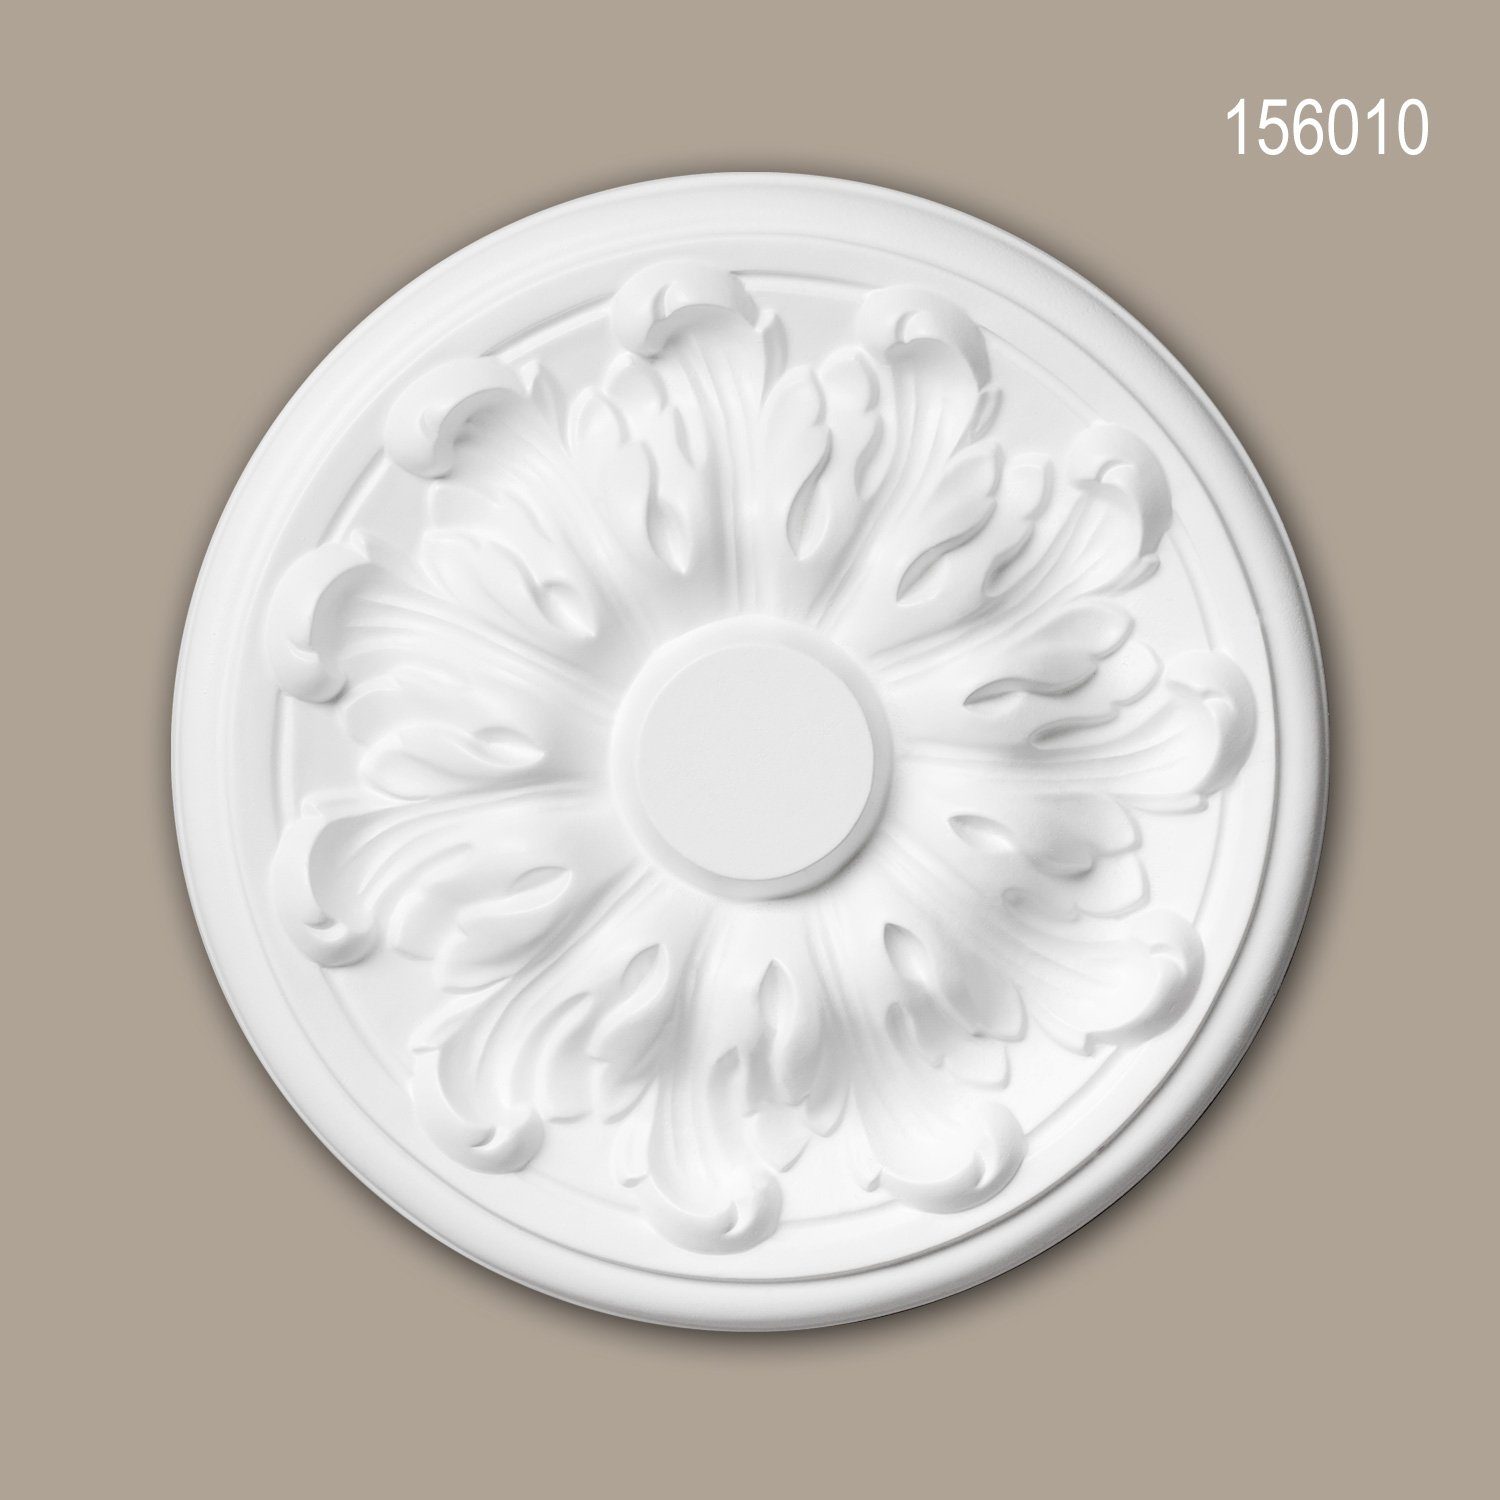 Profhome Decken-Rosette 156010 (Rosette, 1 St., Deckenrosette, Medallion, Stuckrosette, Deckenelement, Zierelement, Durchmesser 19,3 cm), weiß, vorgrundiert, Stil: Neo-Klassizismus